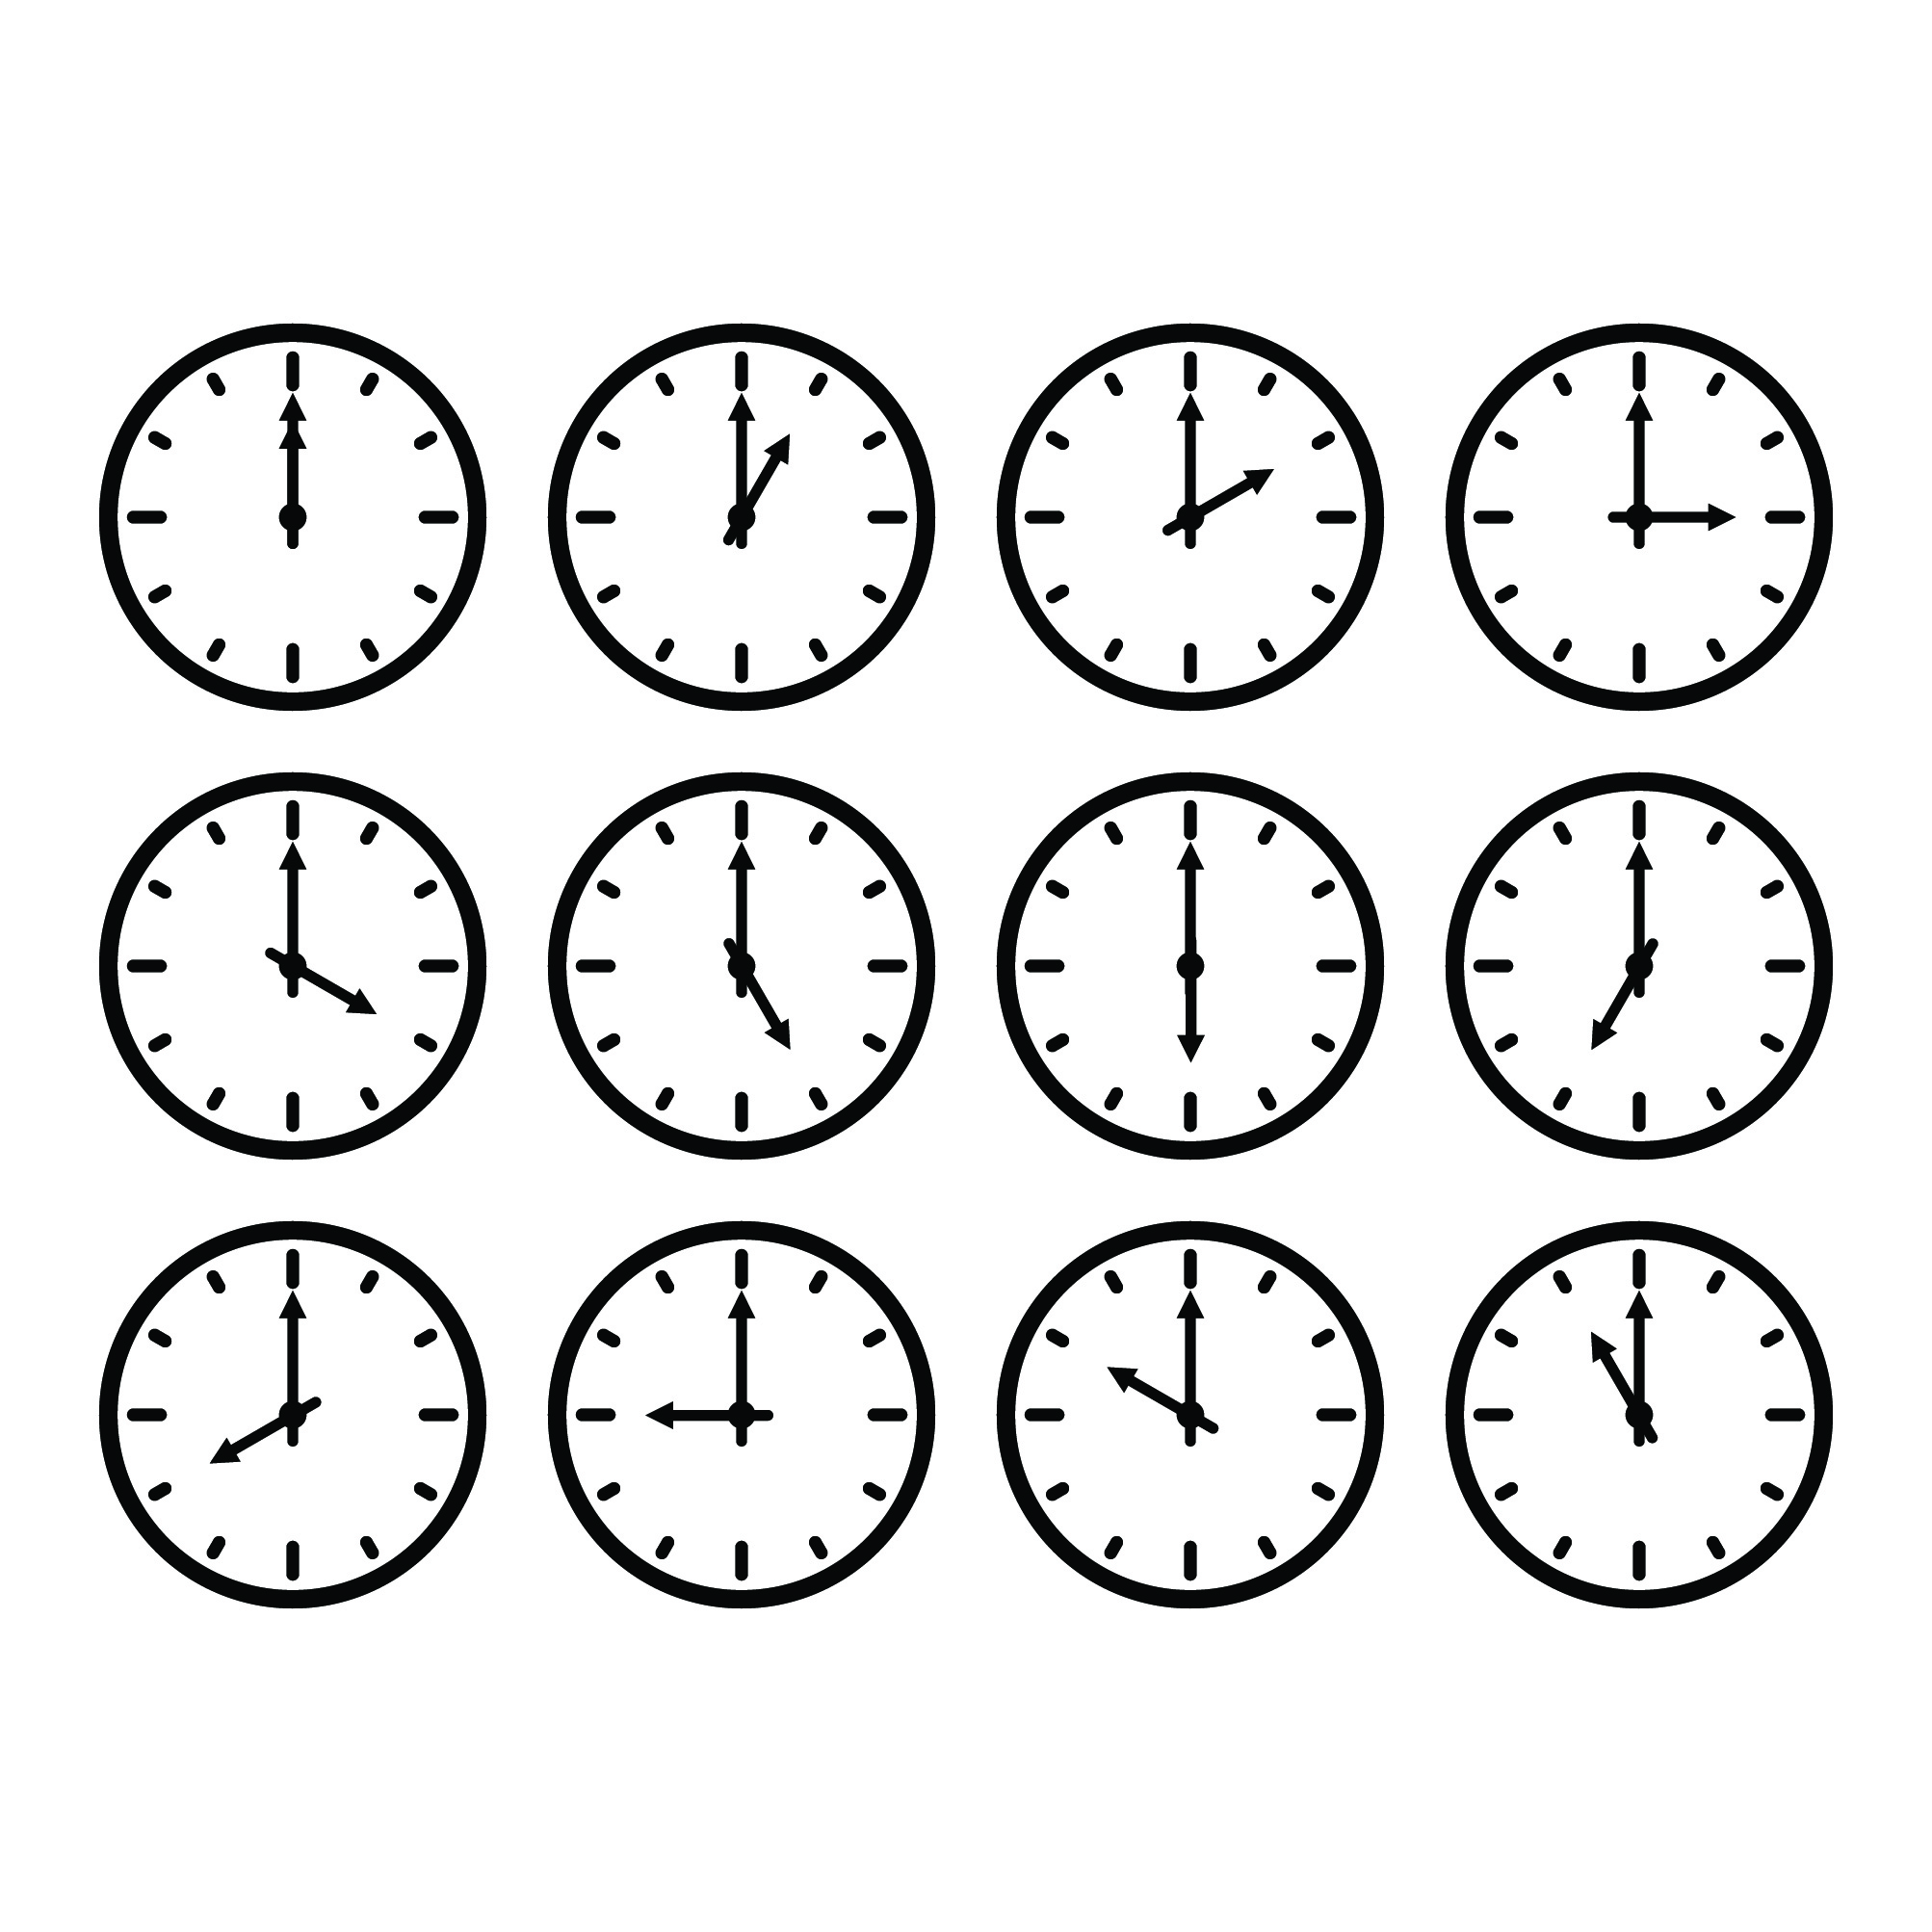 Grundig Mægtig skepsis Set of analog clock, 12 times vector illustration 1857215 Vector Art at  Vecteezy